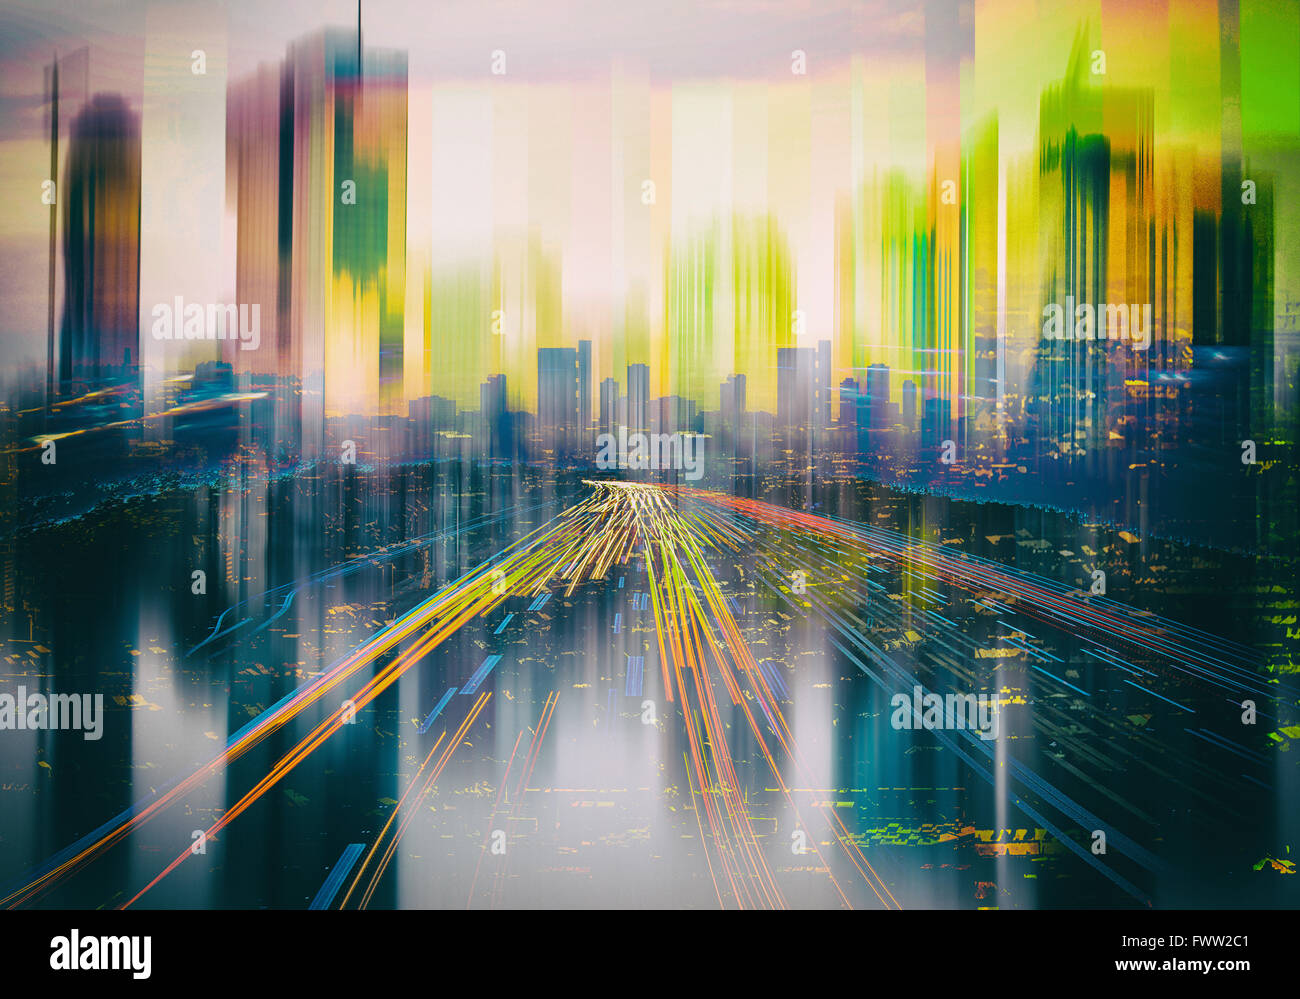 abstraktes Bild des Stadtbildes, Stadt der Zukunft Stockfoto